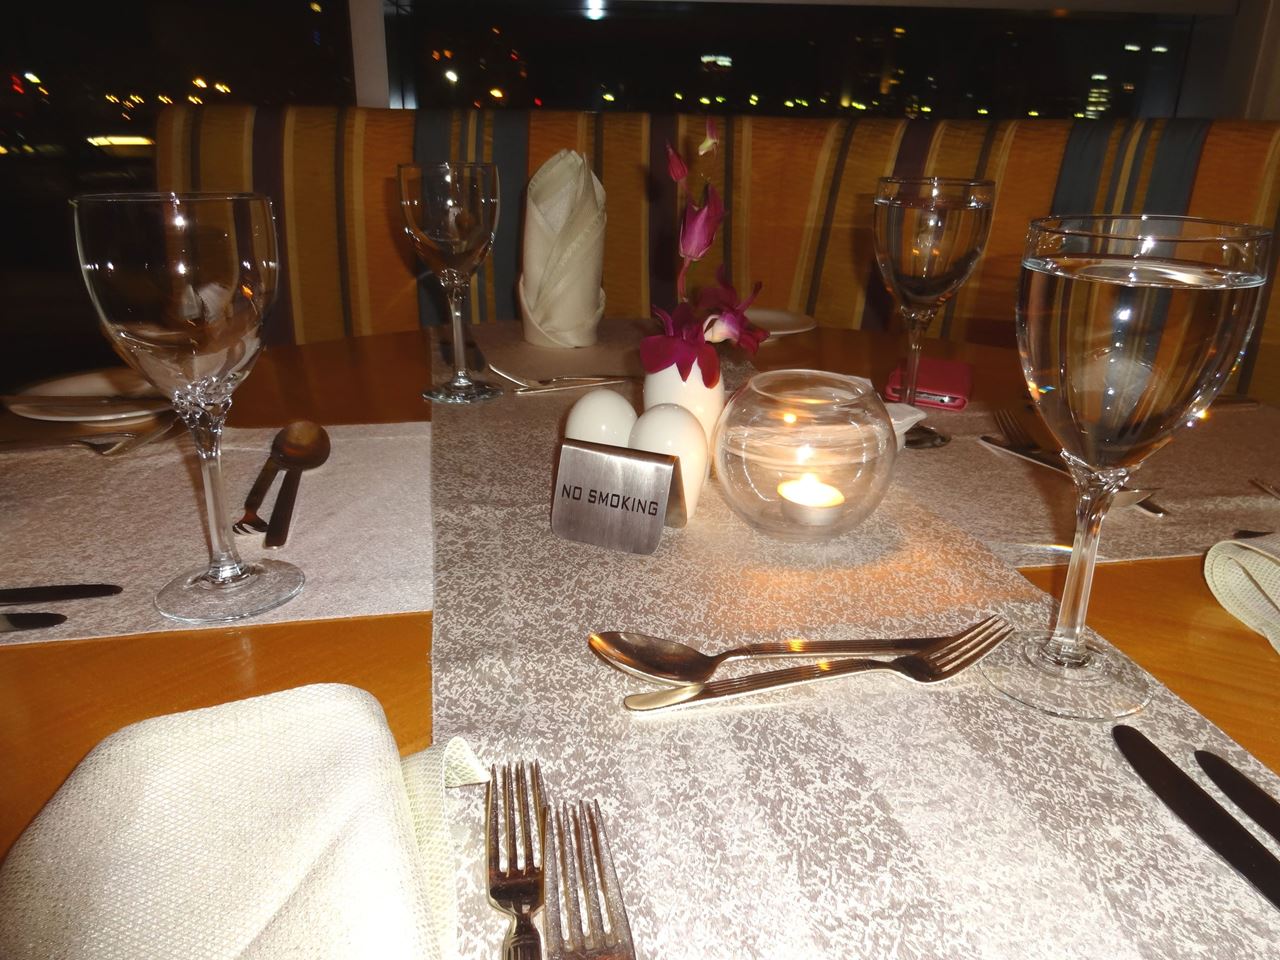 Buffet Dinner at Atlantis Restaurant in Marina Hotel